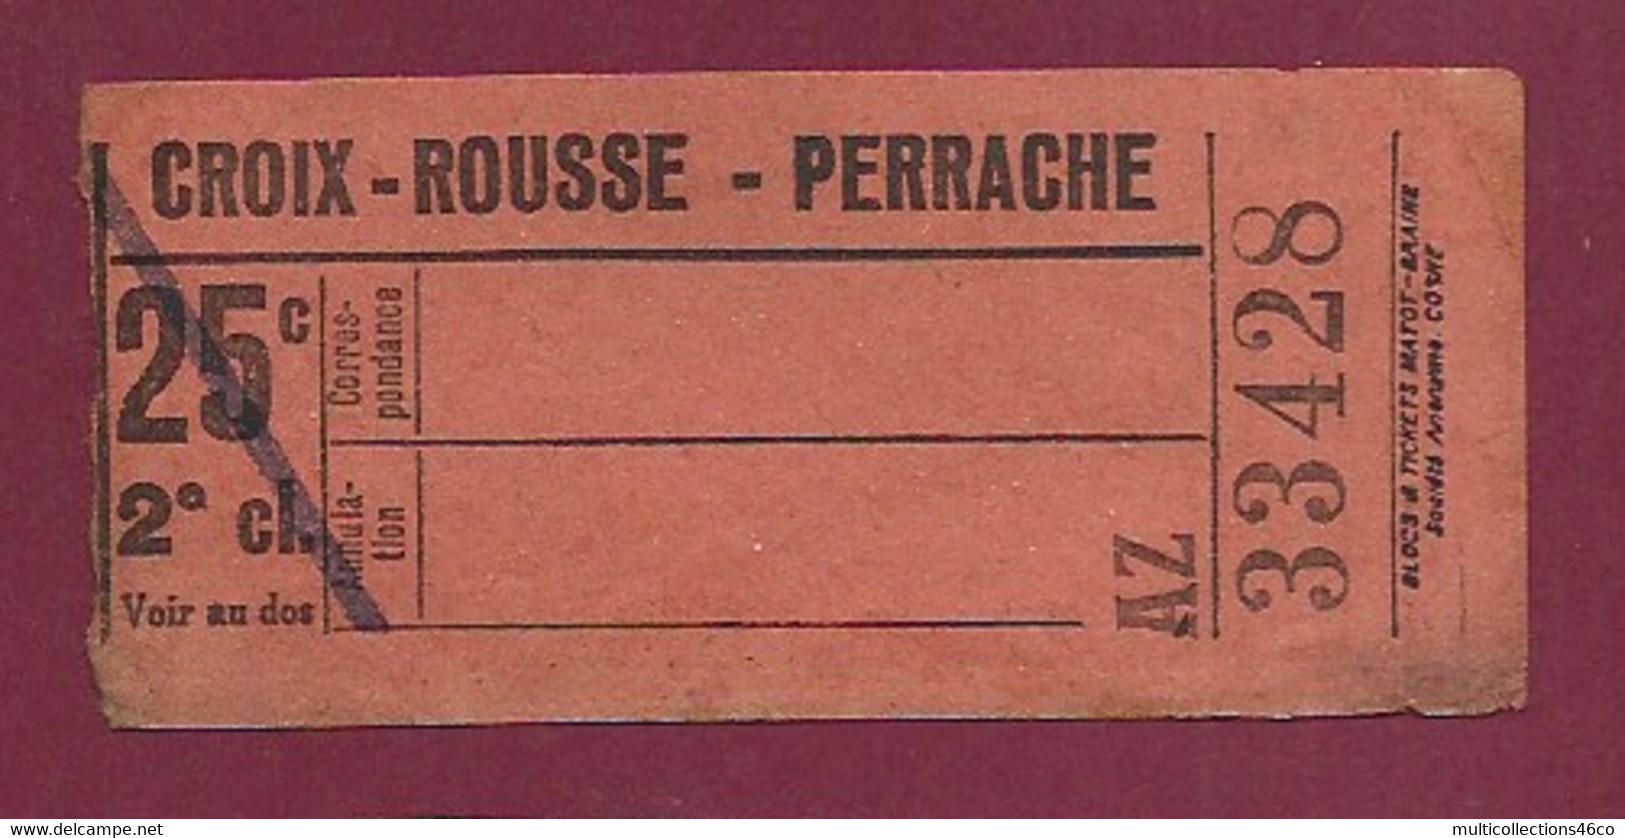 030121 - TICKET CHEMIN DE FER TRAM METRO - CROIX ROUSSE PERRACHE 25c 2e Cl AZ 33428 - Europe